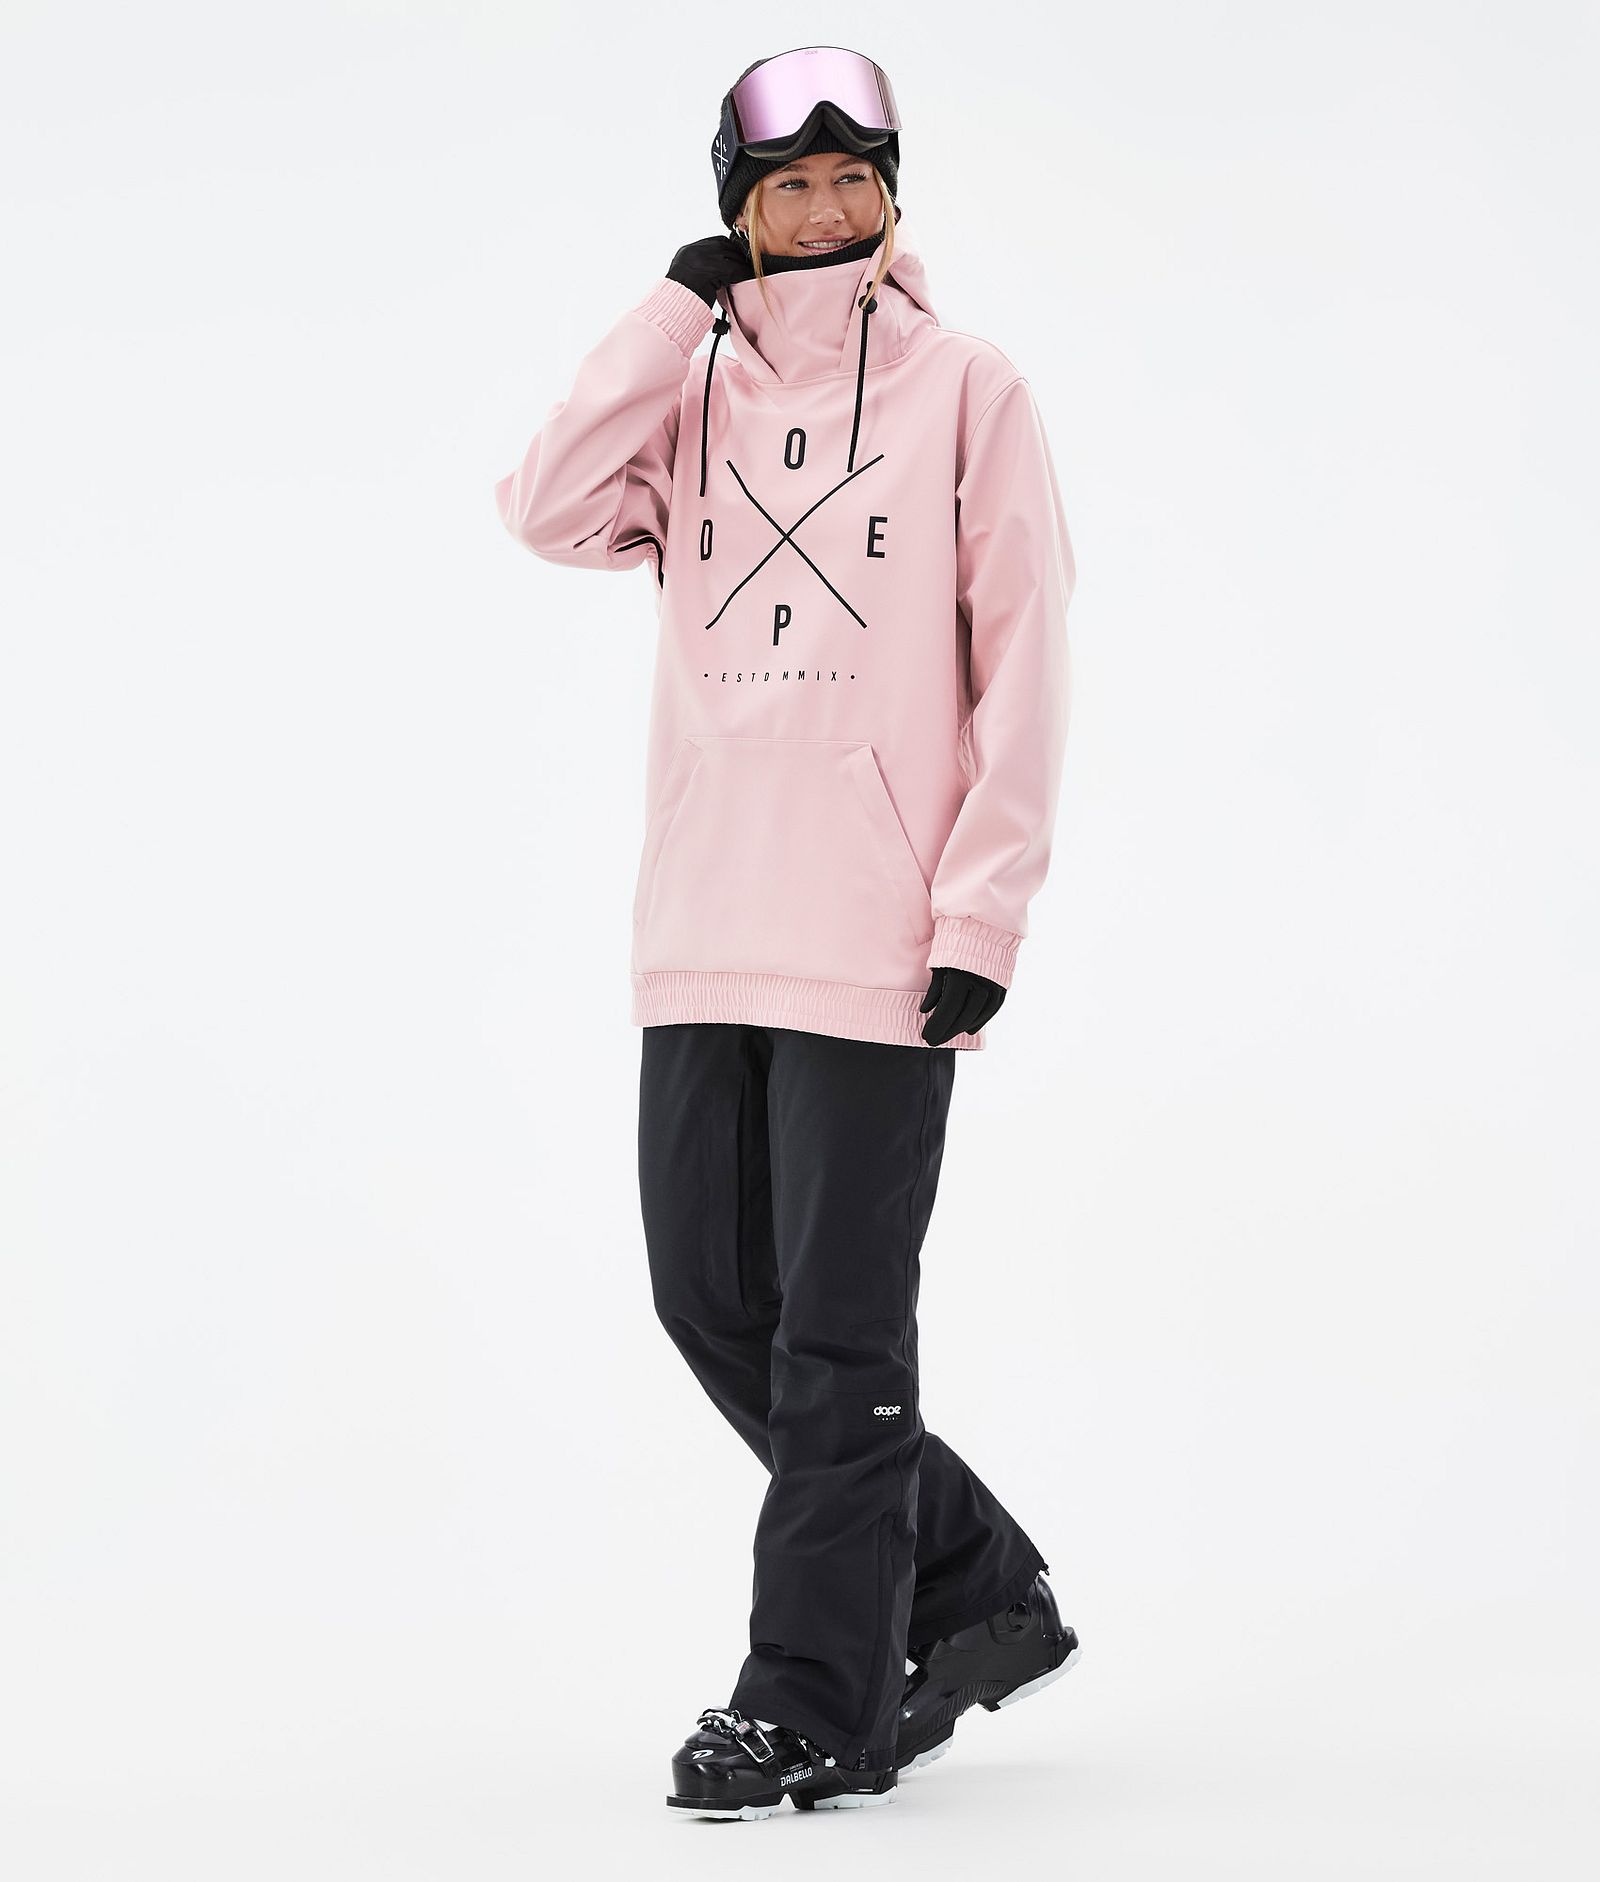 Yeti W Ski jas Dames 2X-Up Soft Pink